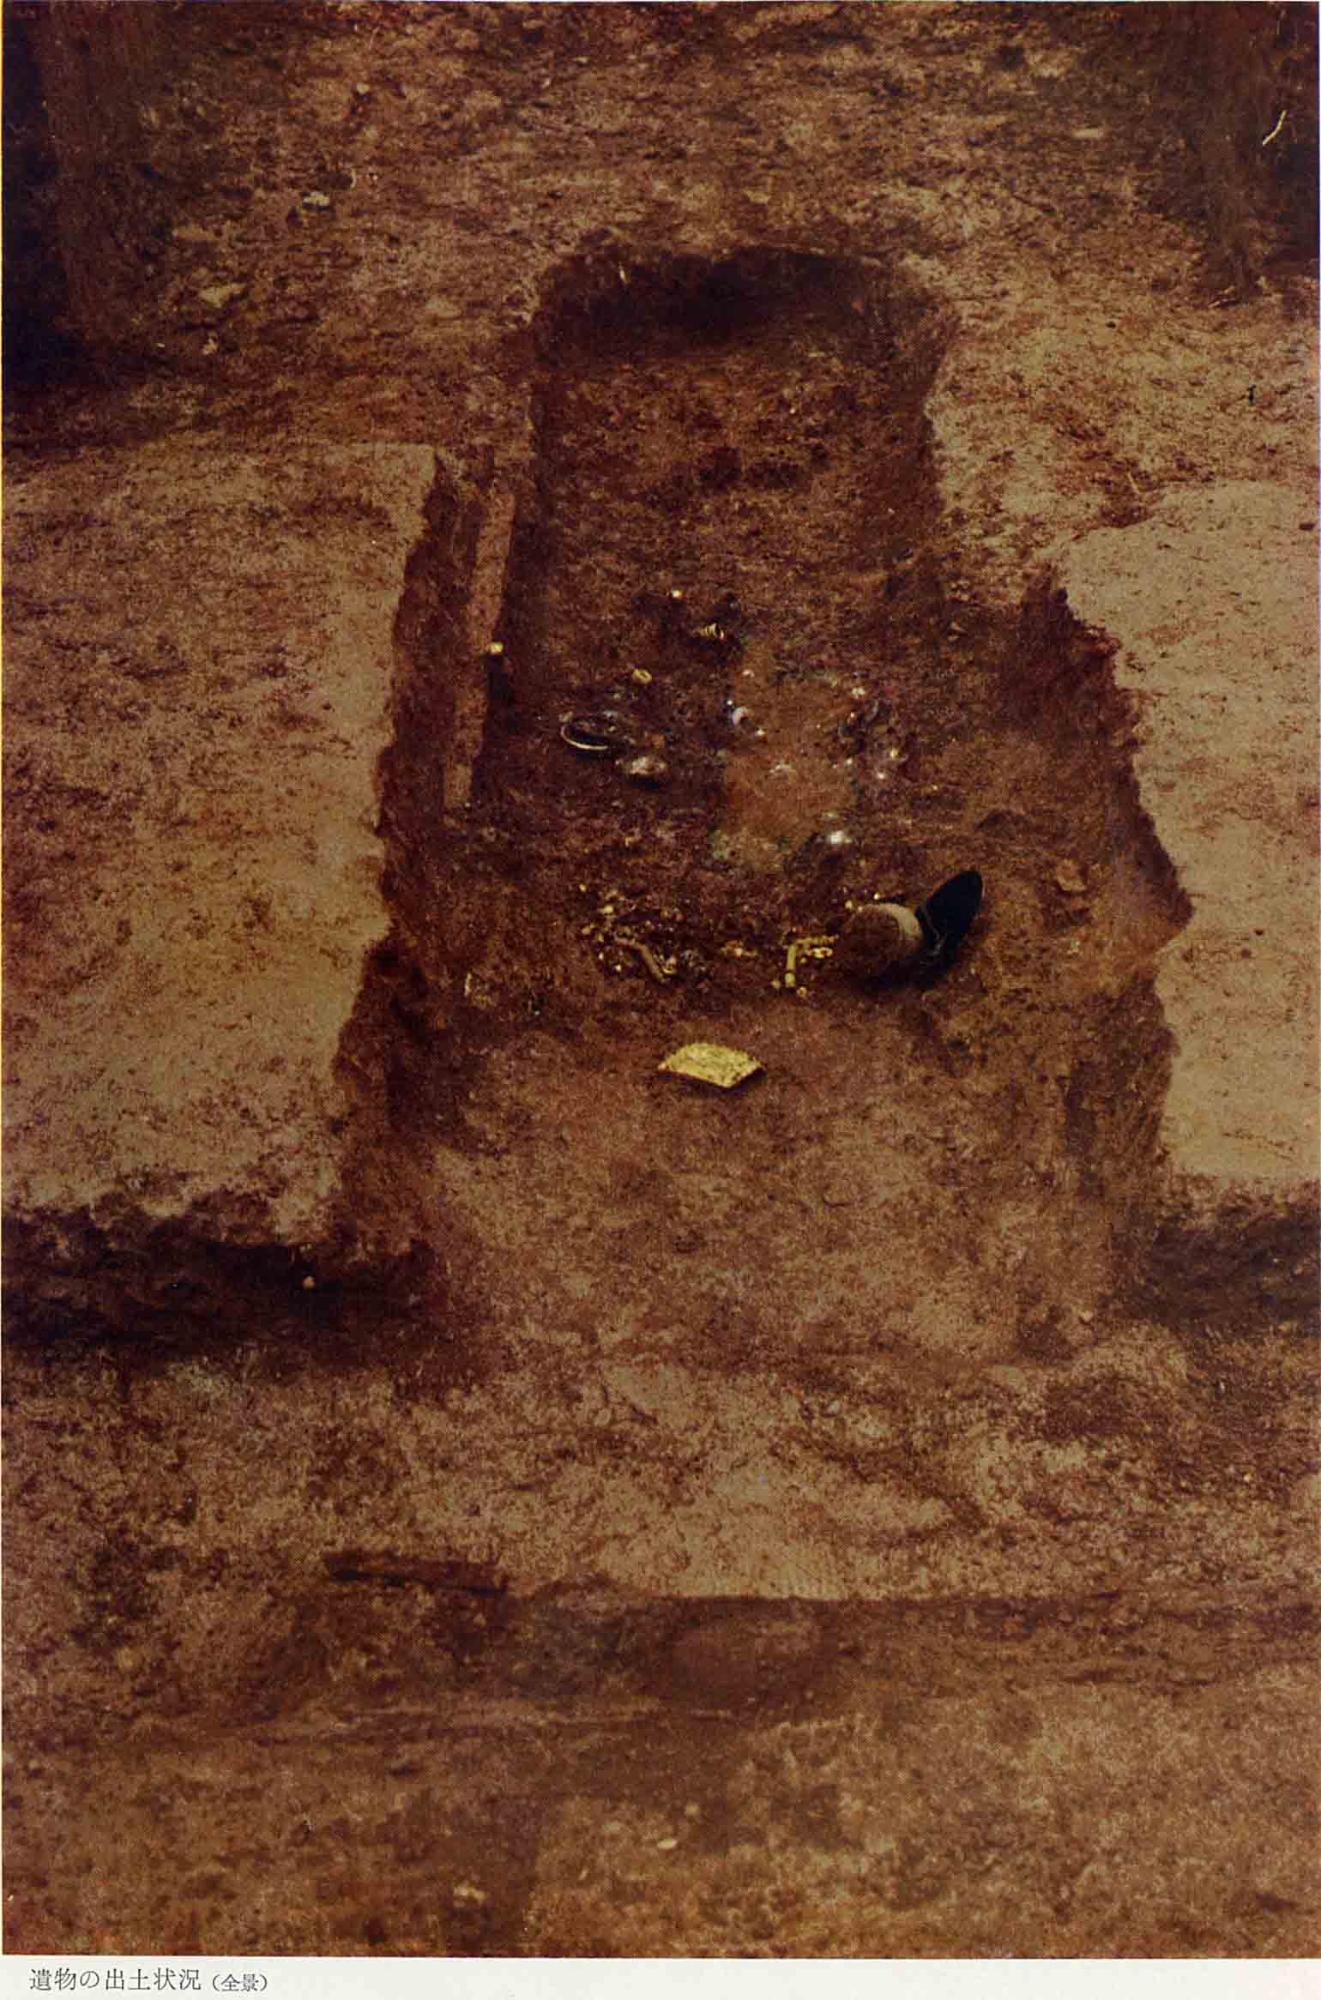 遺物が発掘された状態を撮影した、126号PL6遺物の出土状況（全景）の写真